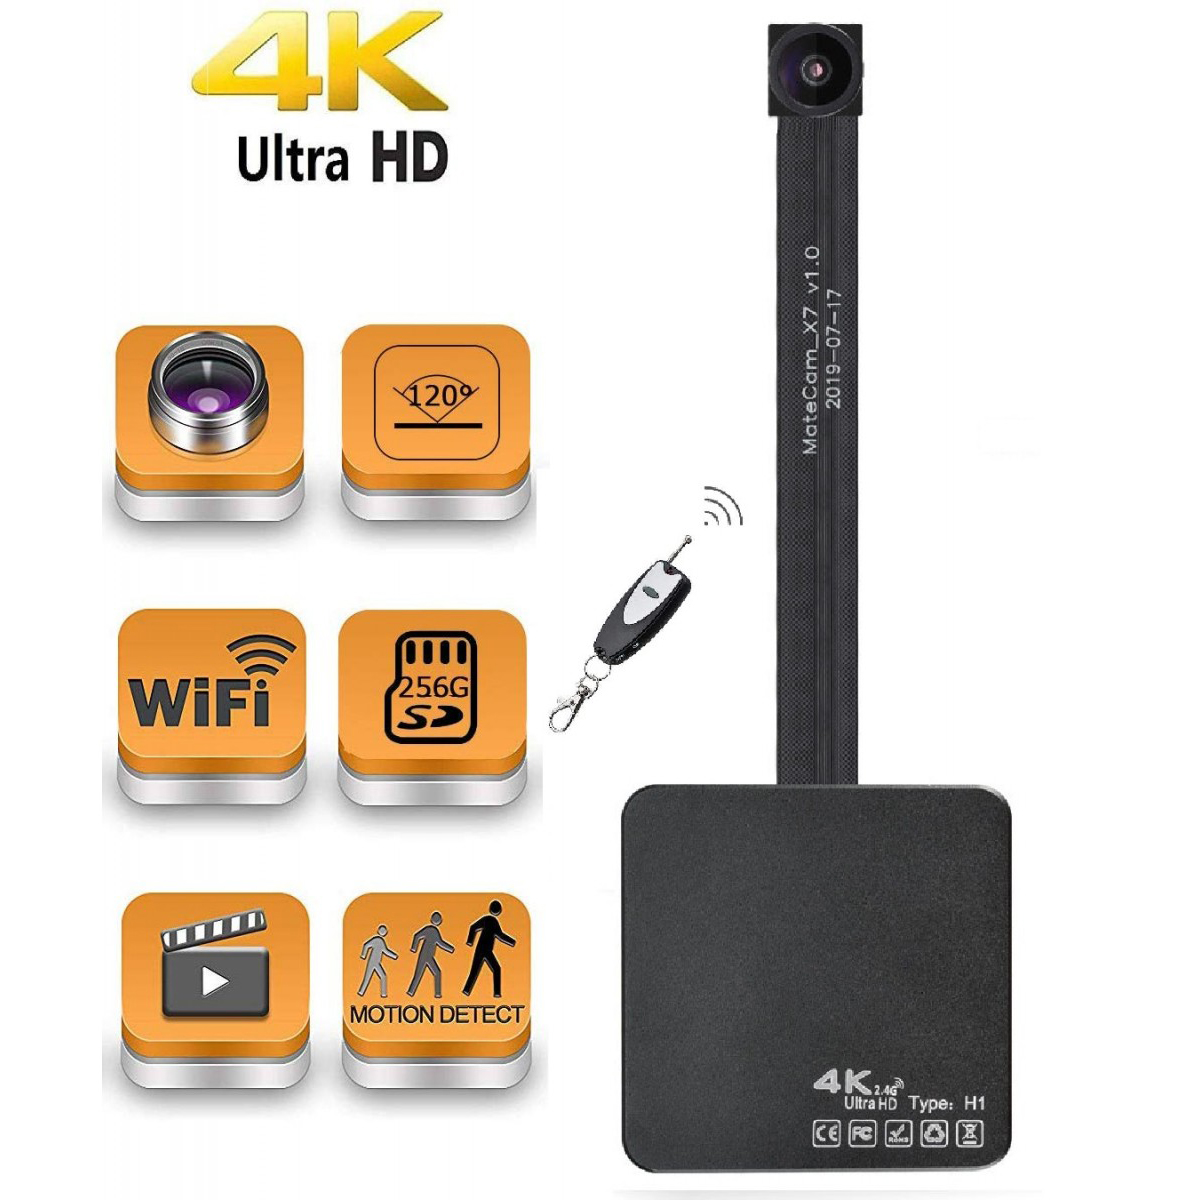 Lente 4K 120 ° Real Ultra HD WiFi Cámara espía oculta Mini cámara Videocámara inalámbrica portátil Grabadora de video con detección de movimiento Nanny Cam para monitoreo de seguridad en el hogar de hasta 400GB